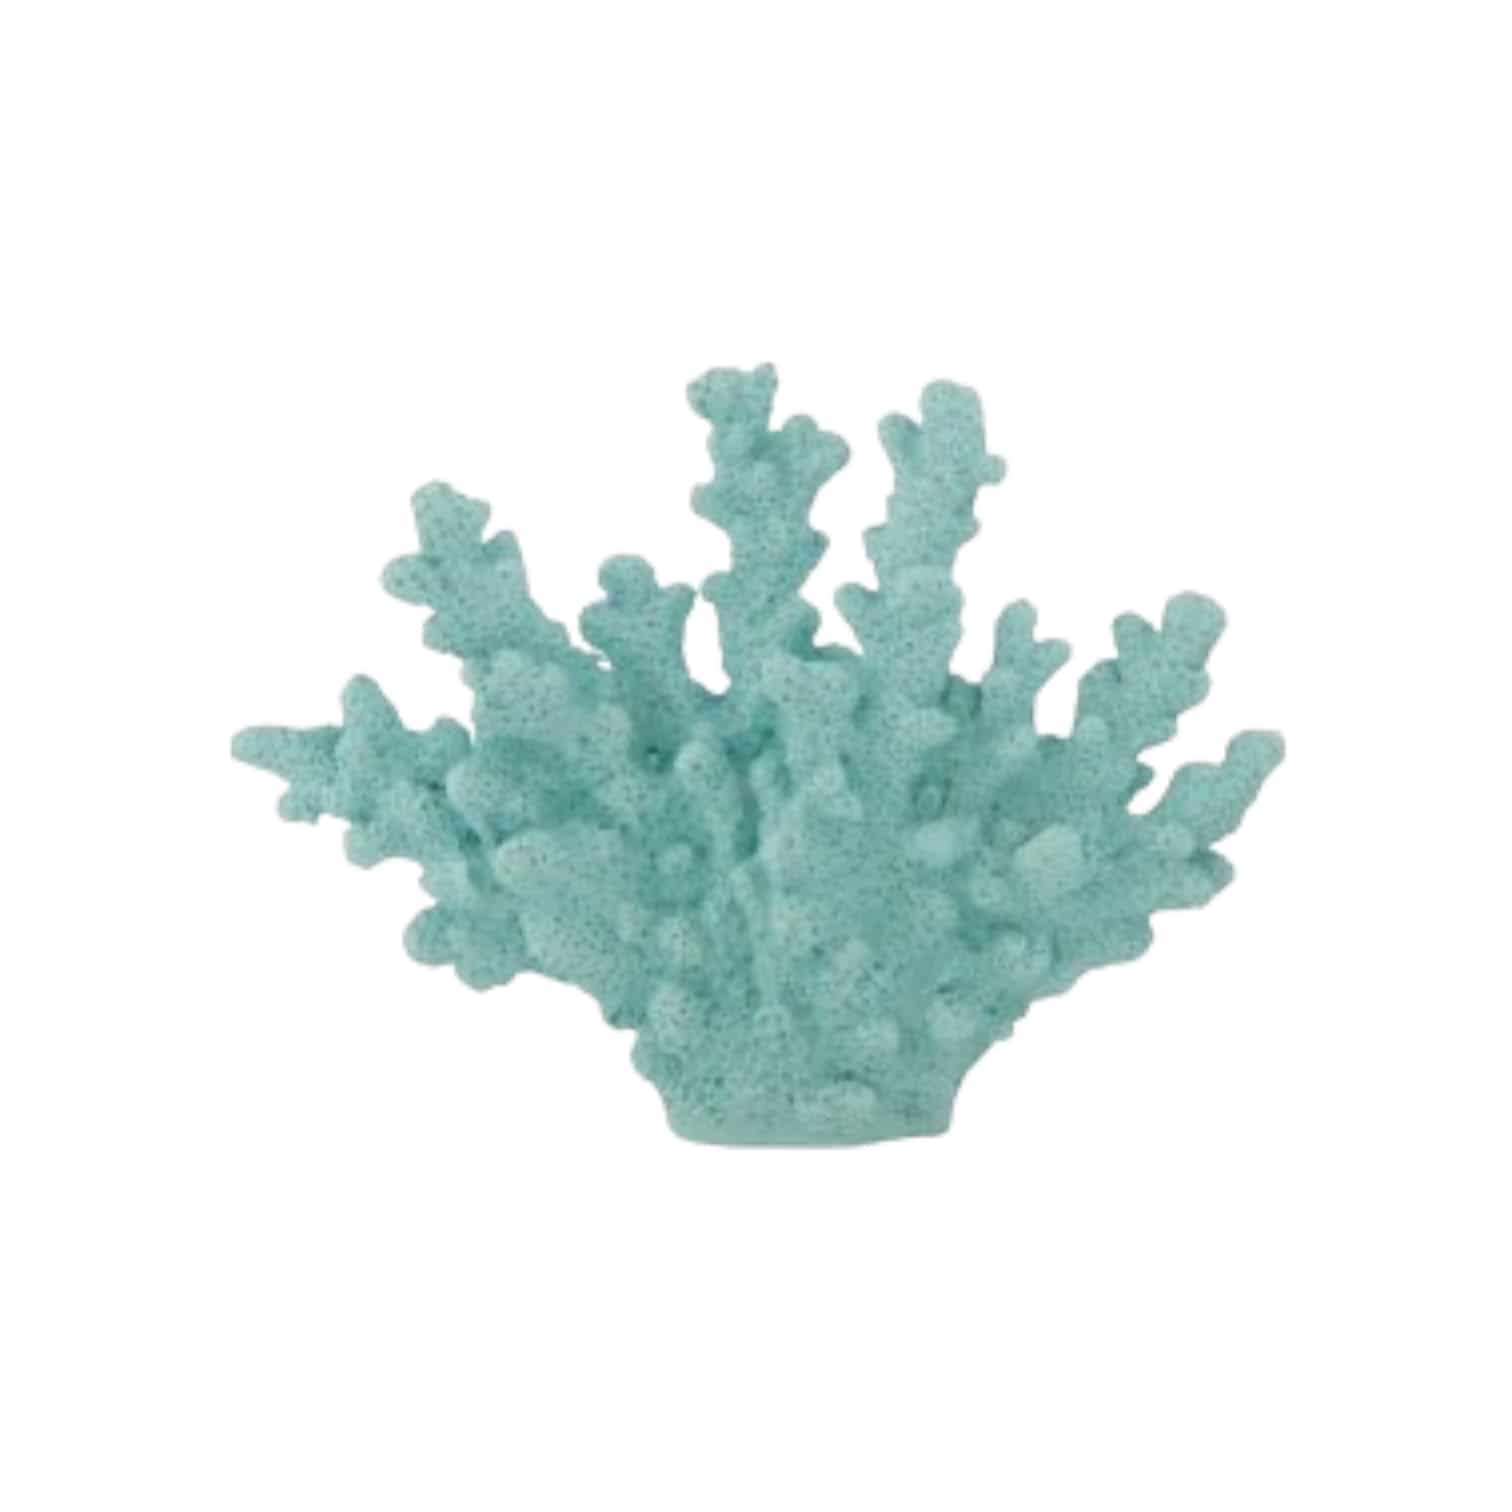 Koralle blau/mint